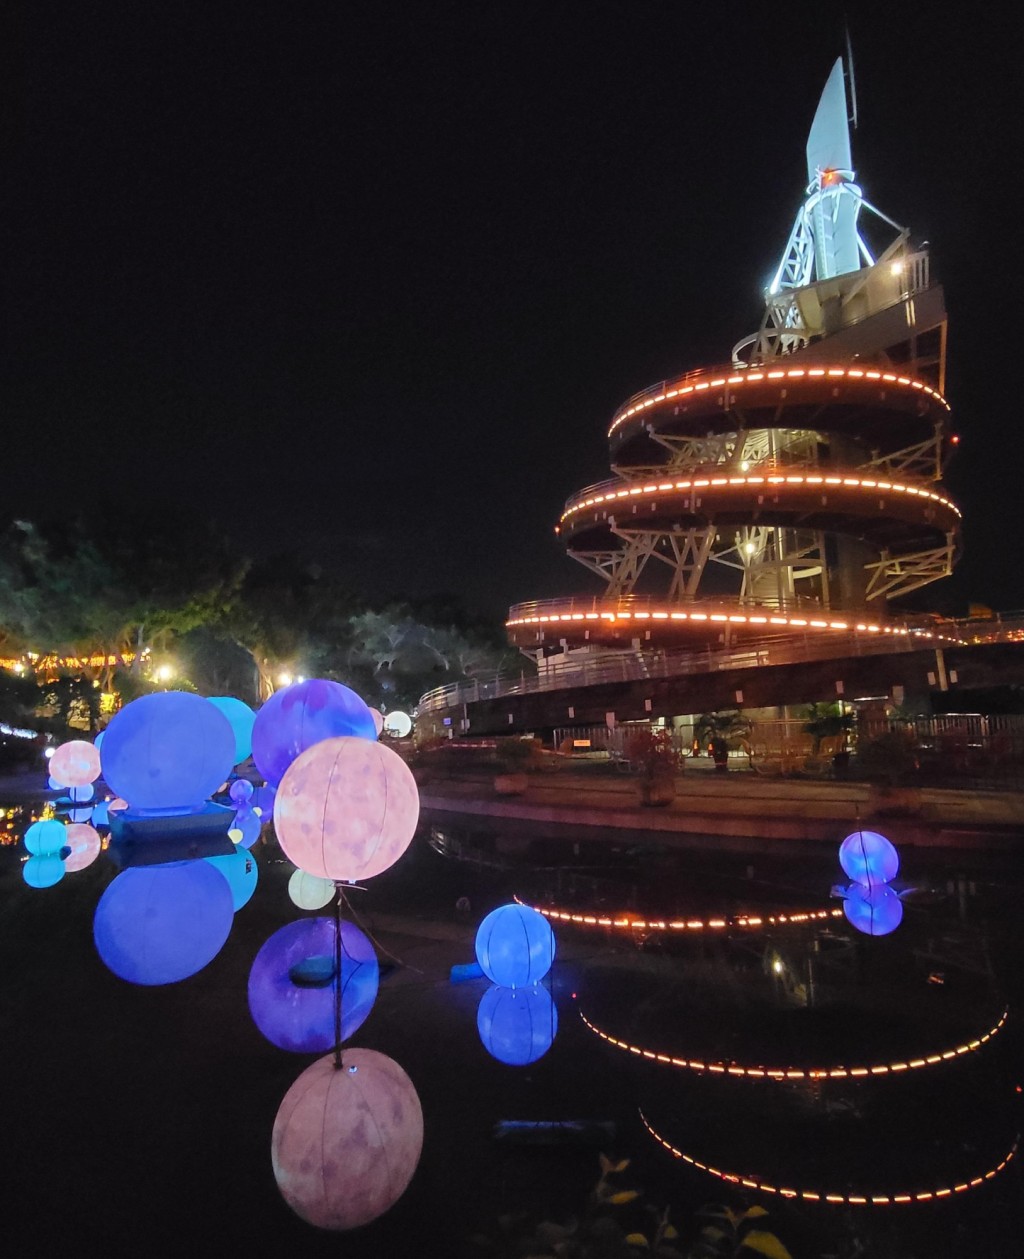 大埔海濱公園以「團圓月‧月圓願」為主題的綵燈。